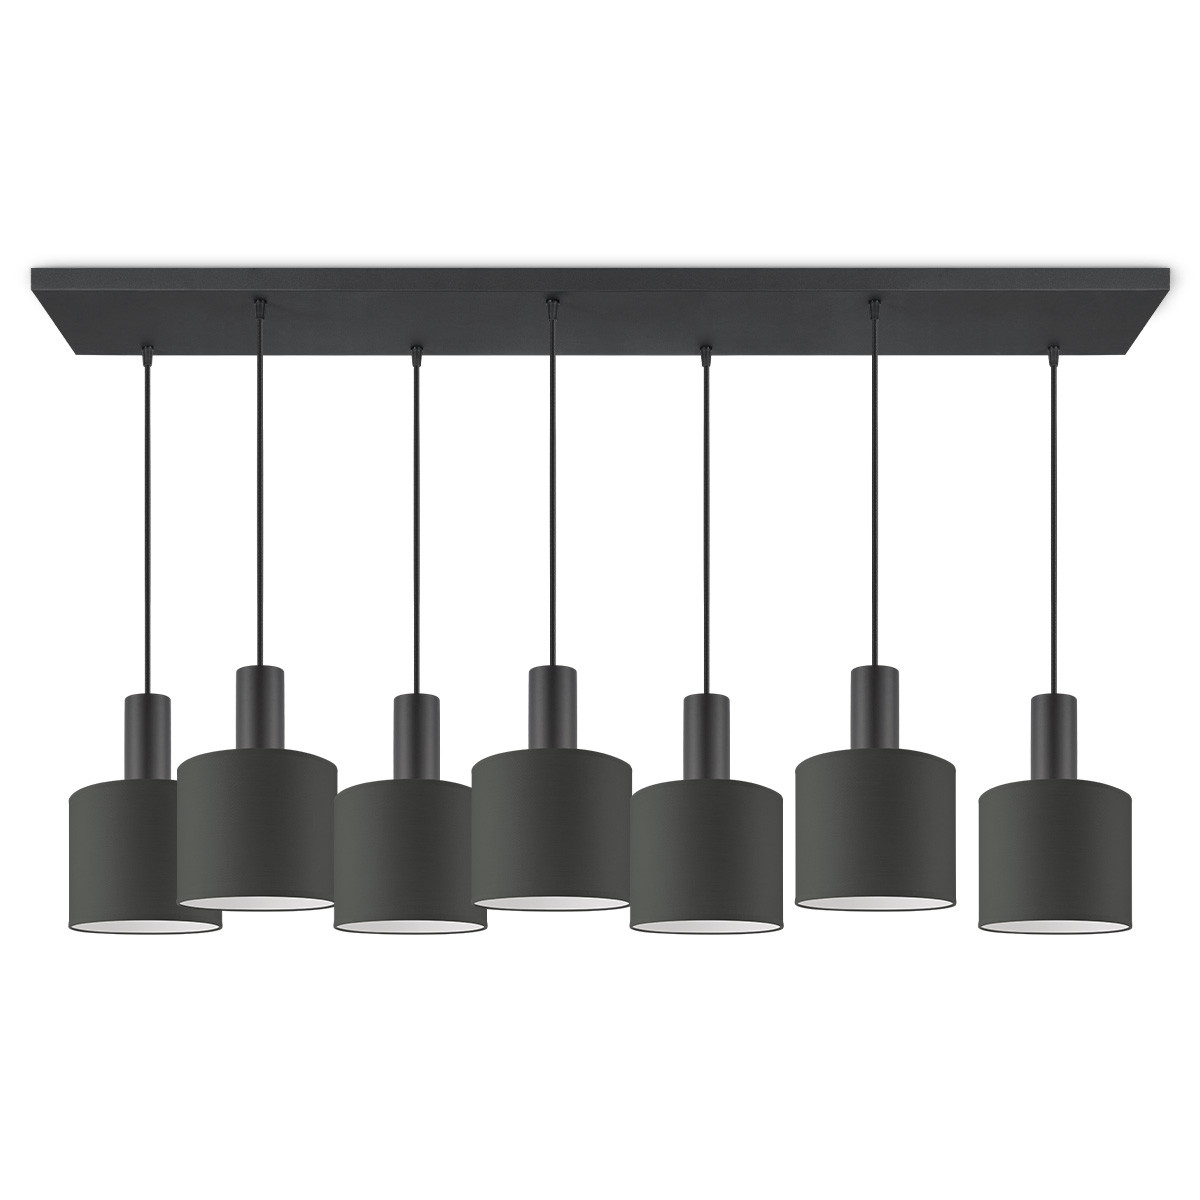 Moderne hanglamp Bling - Antraciet - verlichtingspendel Xxl Bar 7L inclusief lampenkap 20/20/17cm - pendel lengte 150.5 cm - geschikt voor E27 LED lamp - Pendellamp geschikt voor woonkamer, s